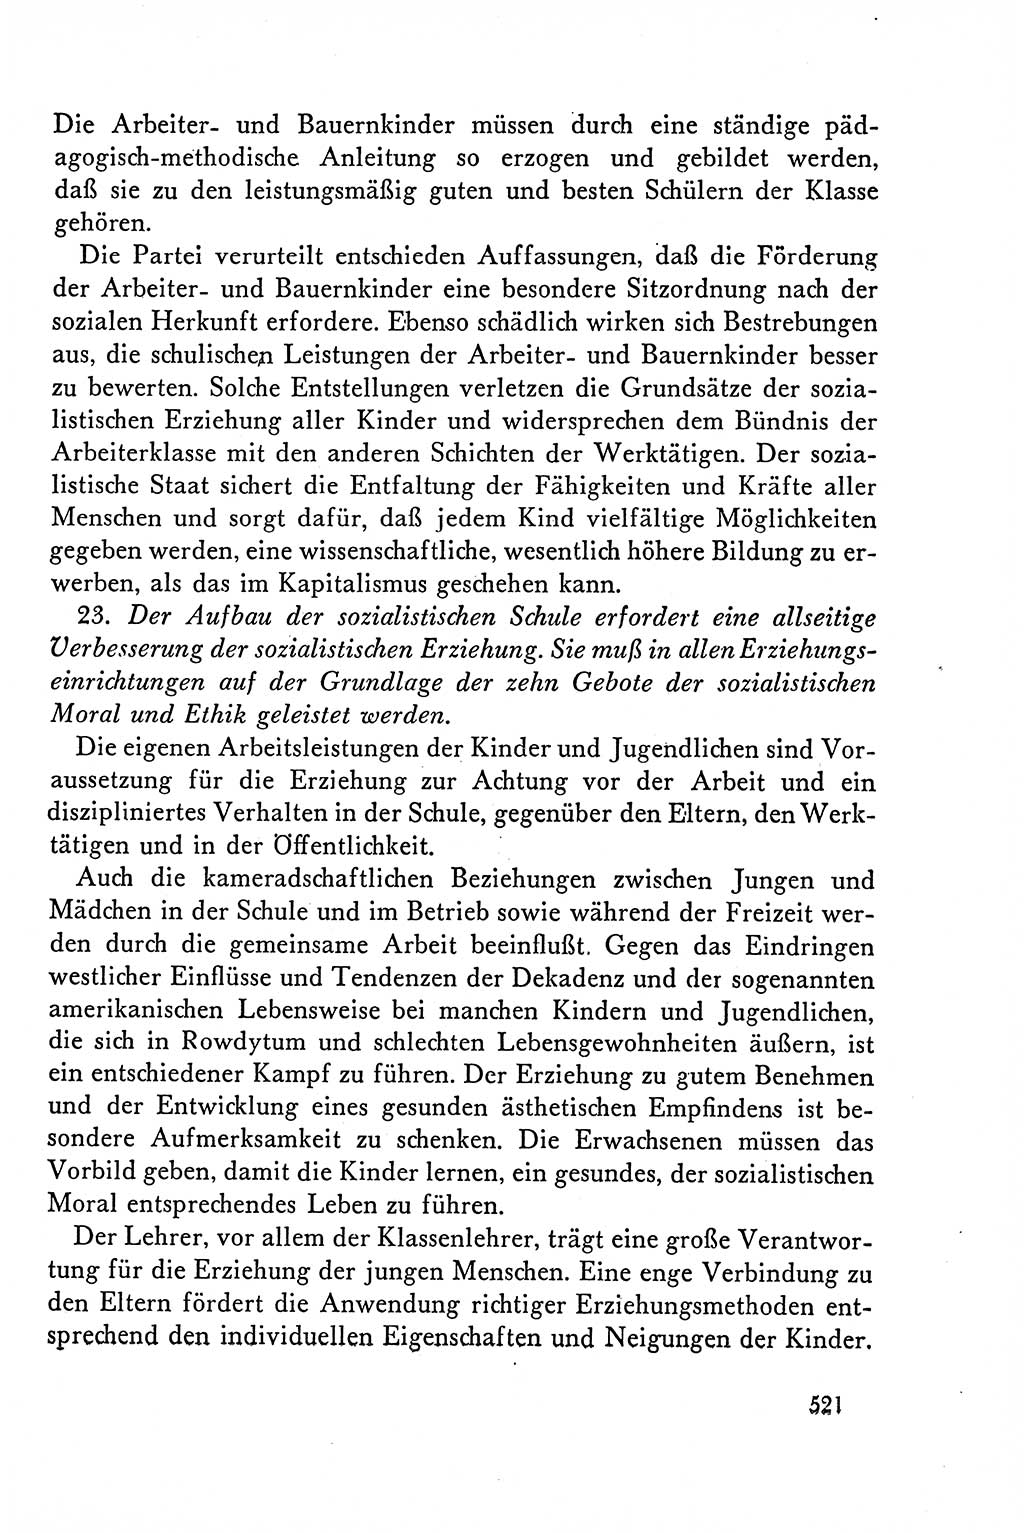 Dokumente der Sozialistischen Einheitspartei Deutschlands (SED) [Deutsche Demokratische Republik (DDR)] 1958-1959, Seite 521 (Dok. SED DDR 1958-1959, S. 521)